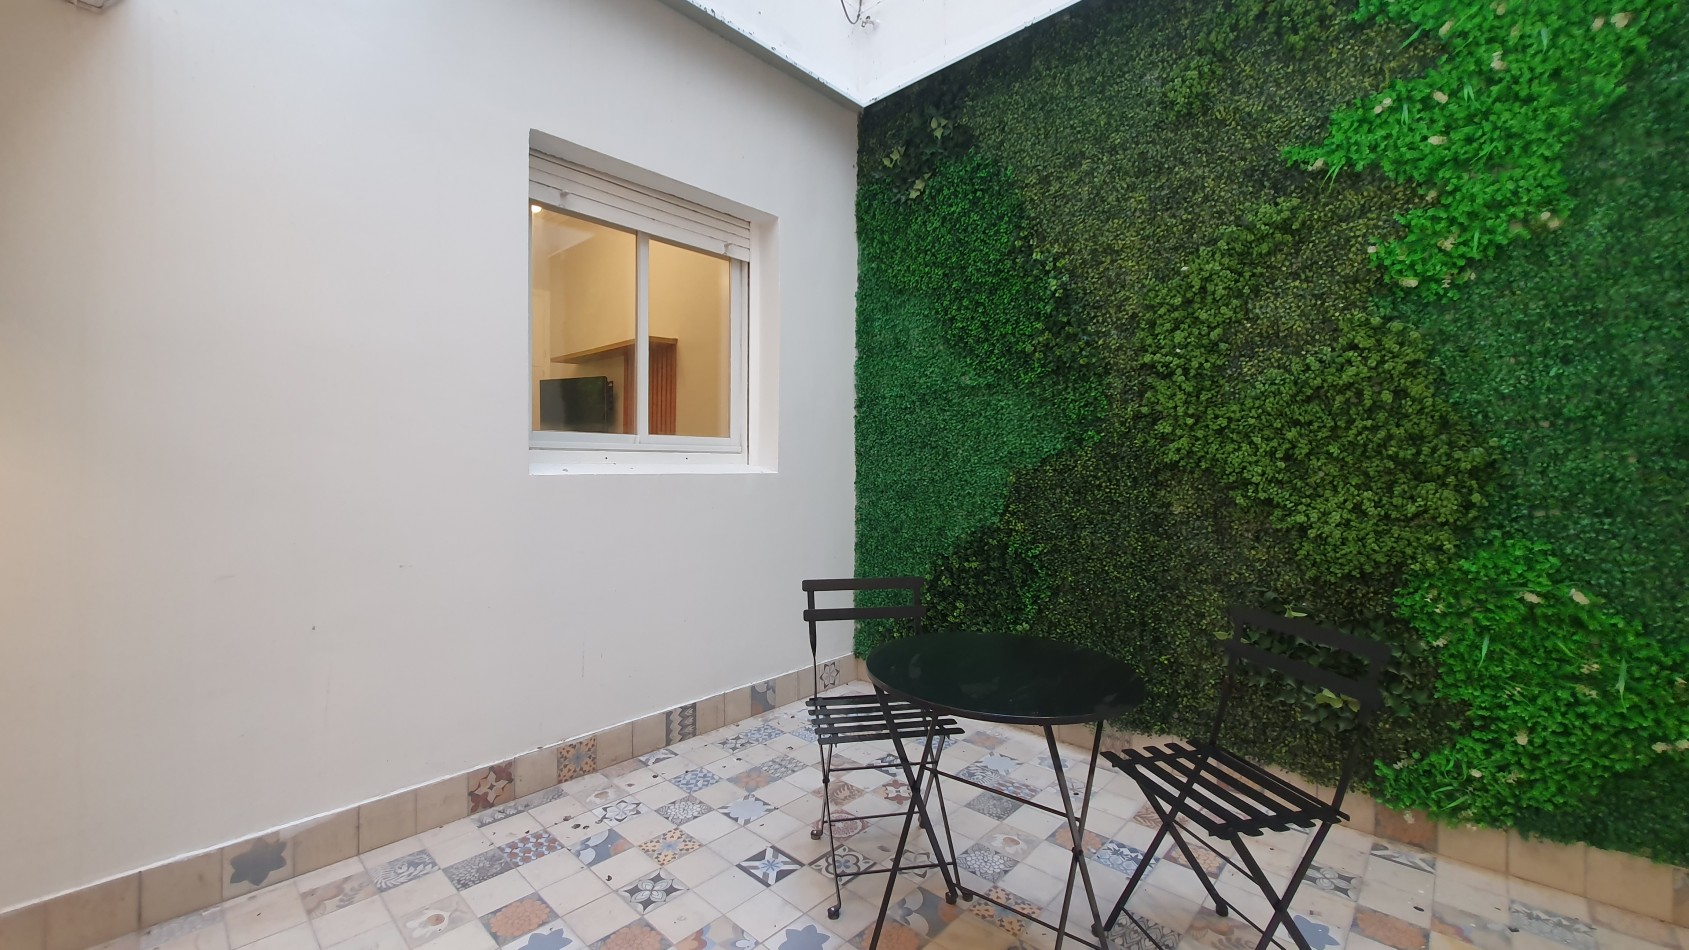 Departamento tres ambientes con patio. Reciclado y amoblado. Plaza Colon